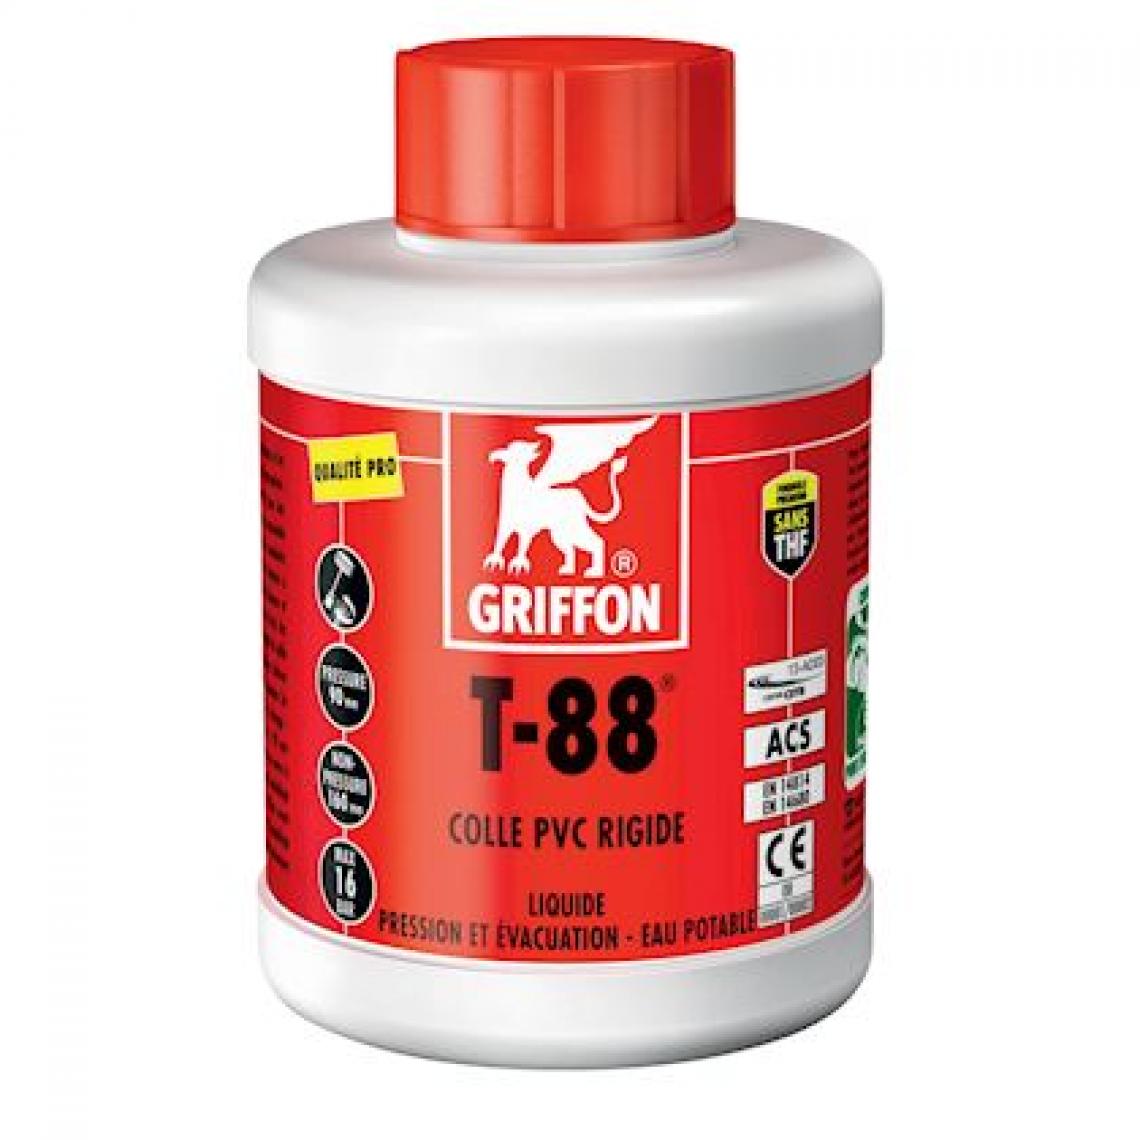 Griffon - colle pvc - griffon t-88 - liquide - bidon de 0.5 litre - griffon 6302441 - Mastic, silicone, joint